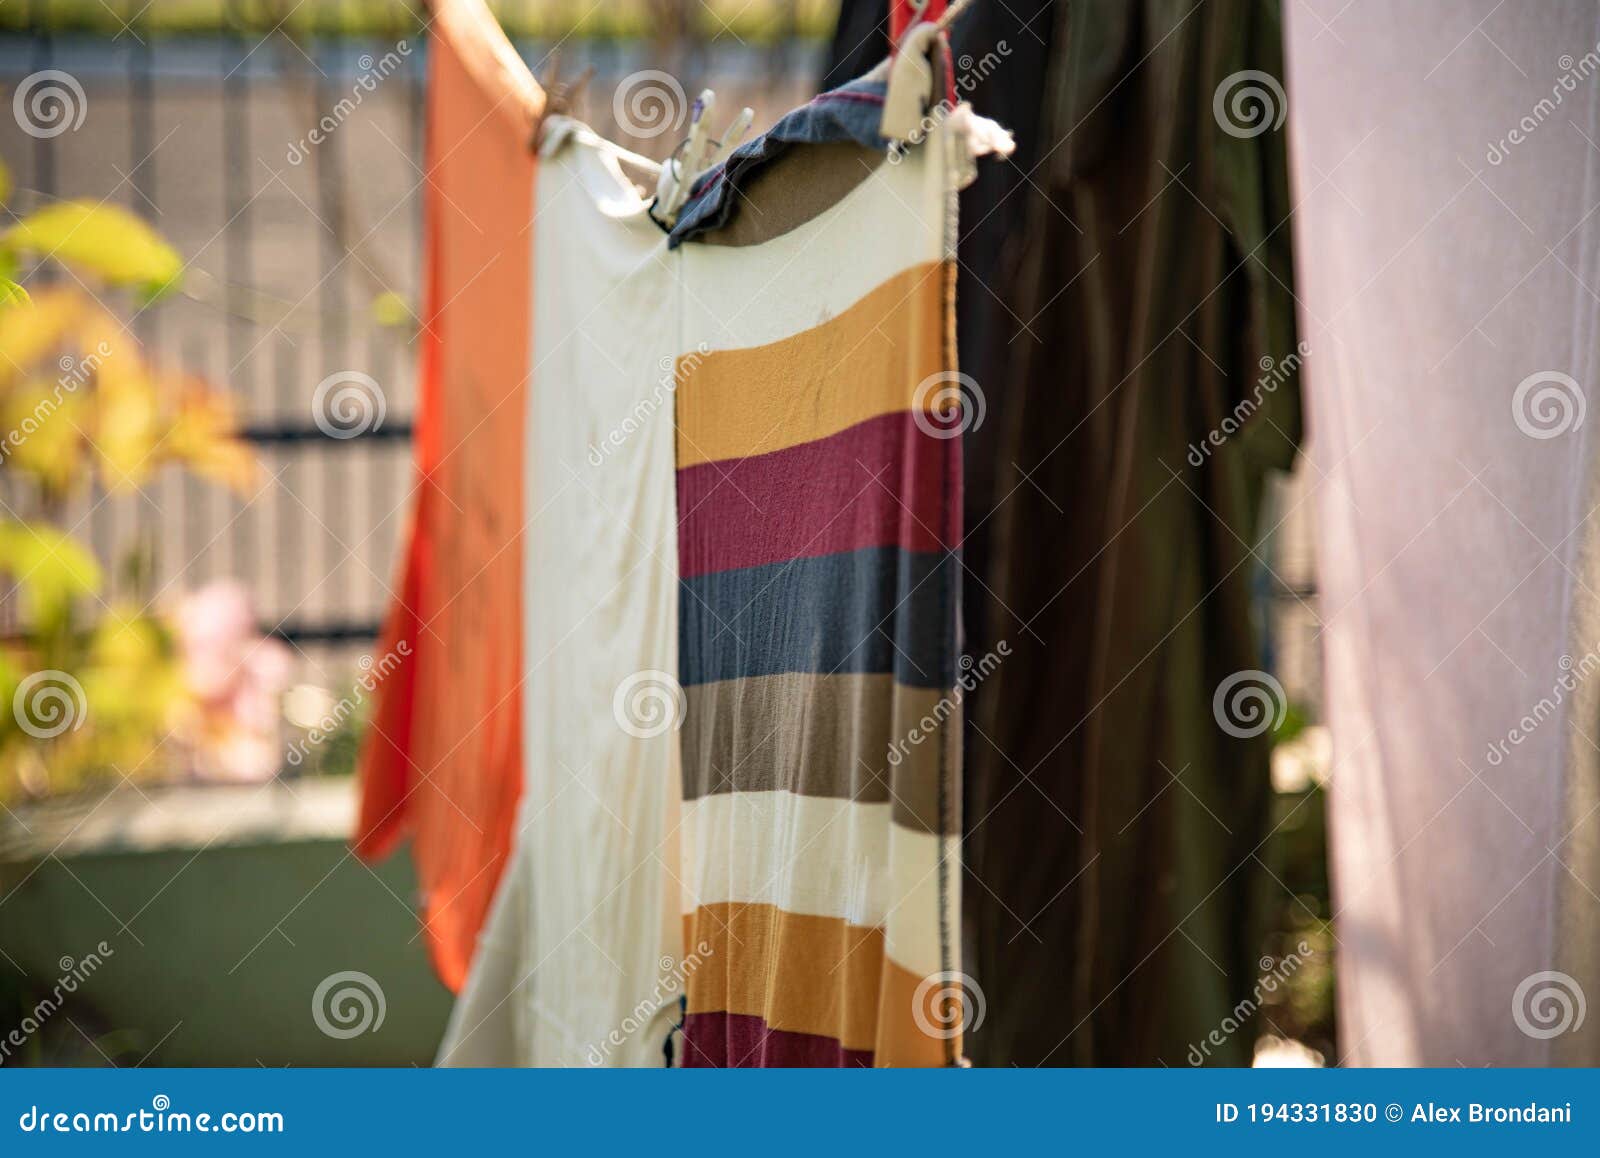 πολύχρωμα ρούχα απλωμένα στο ύφασμα Στοκ Εικόνες - εικόνα από : 194331830